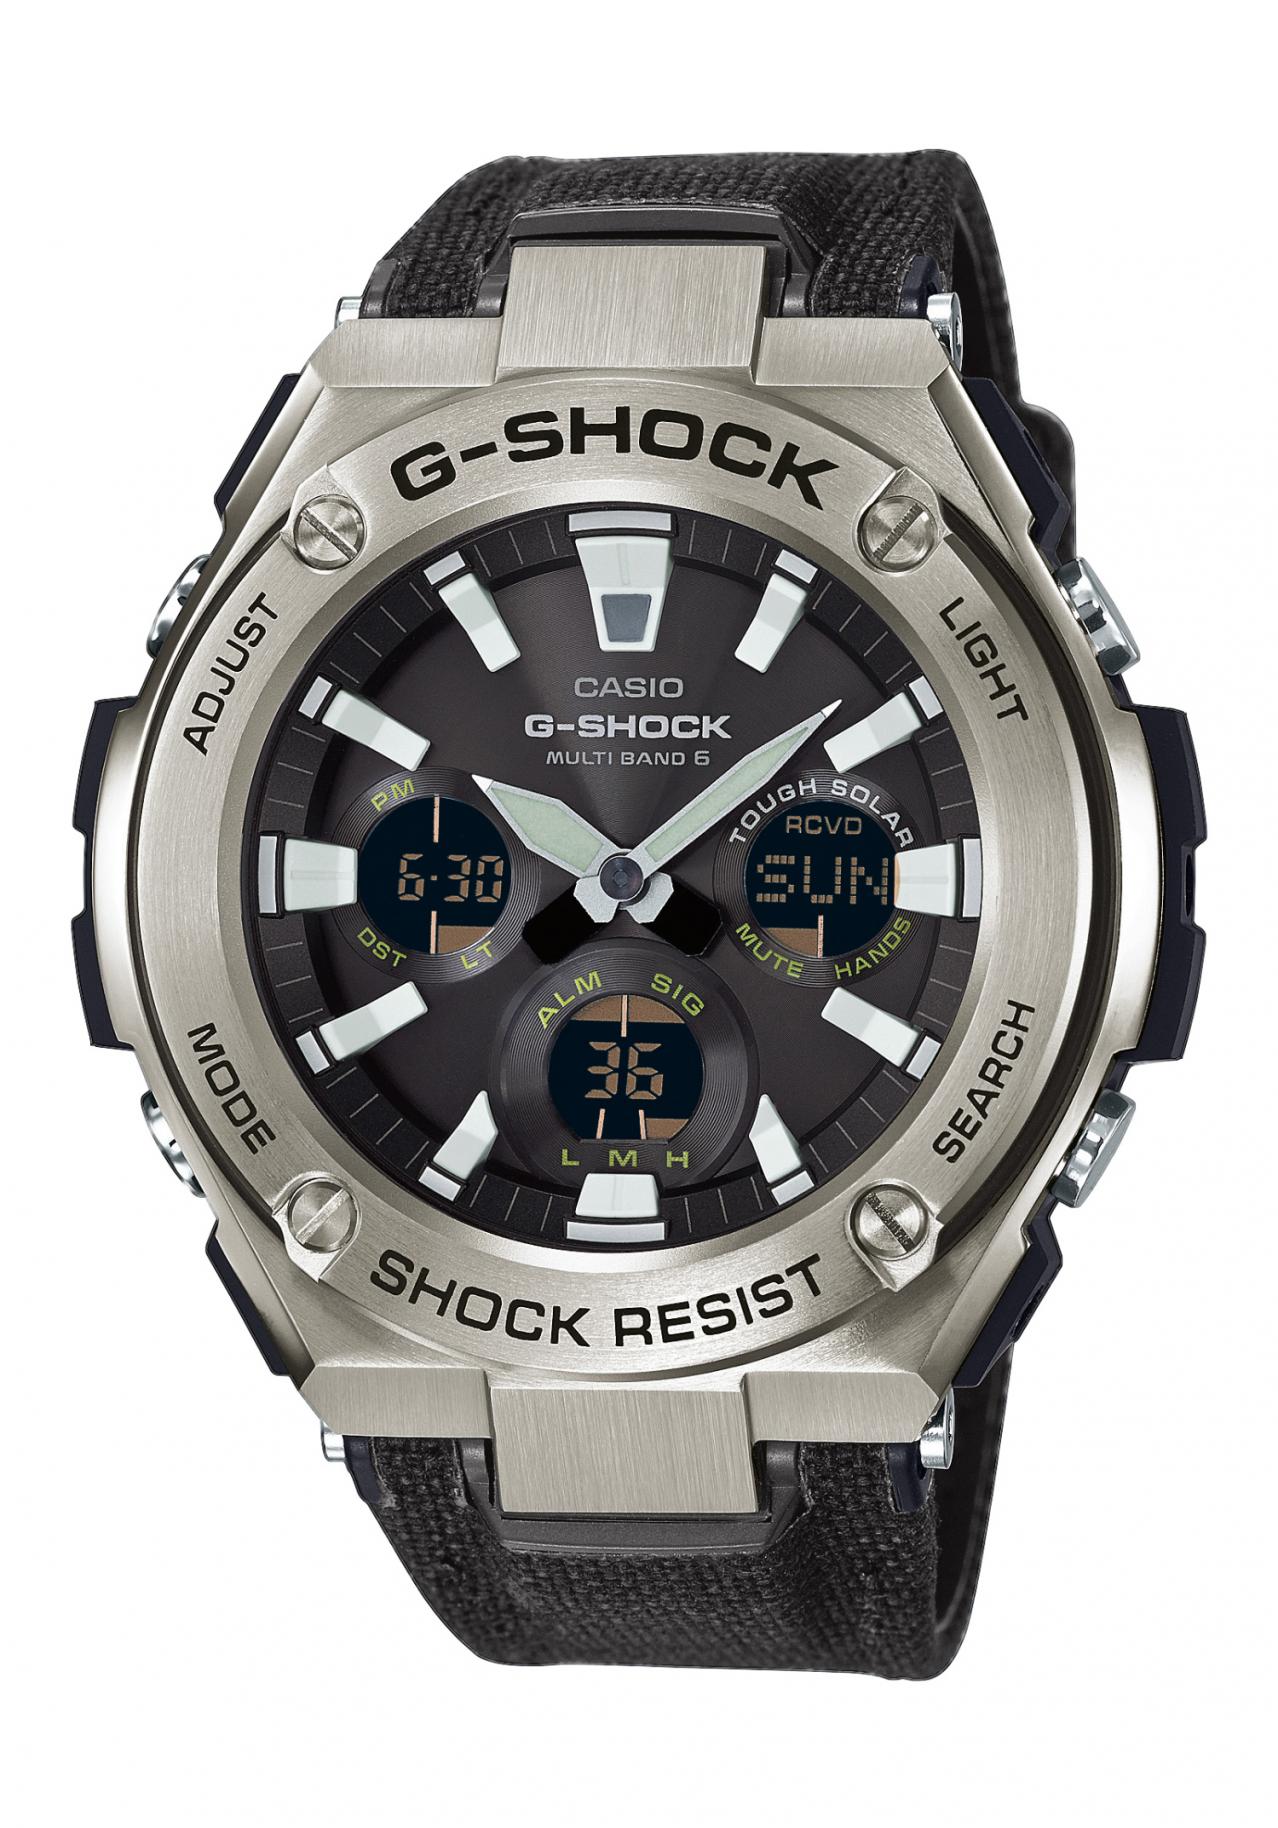 Casio G-Shock Solar-Radio Controlled Watch G-Steel nur 299.00